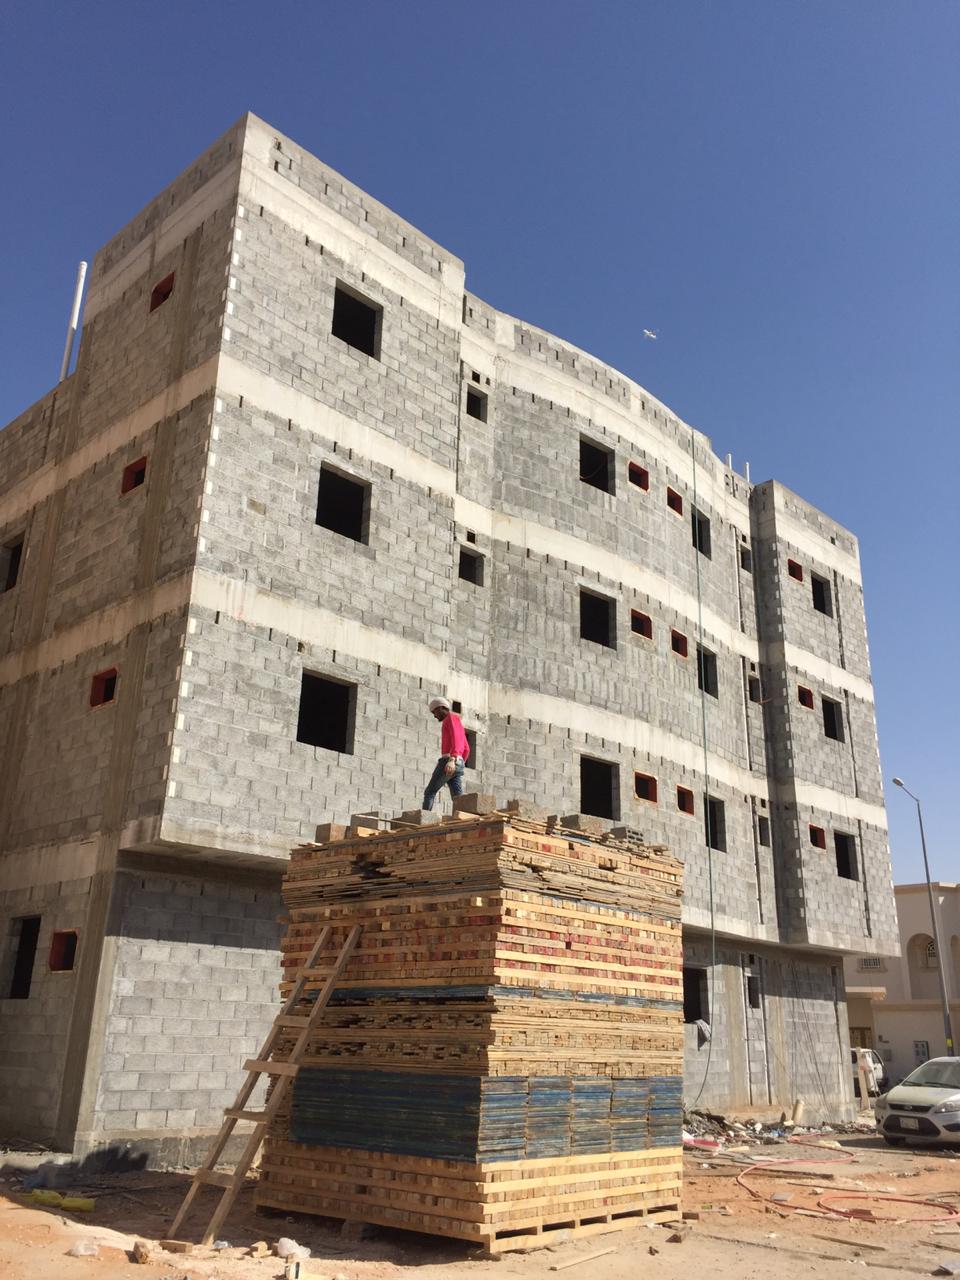 مقاول بناء ملاحق في الرياض 0533266762  مقاول عظم اسود بالرياض، P_1284octxi0